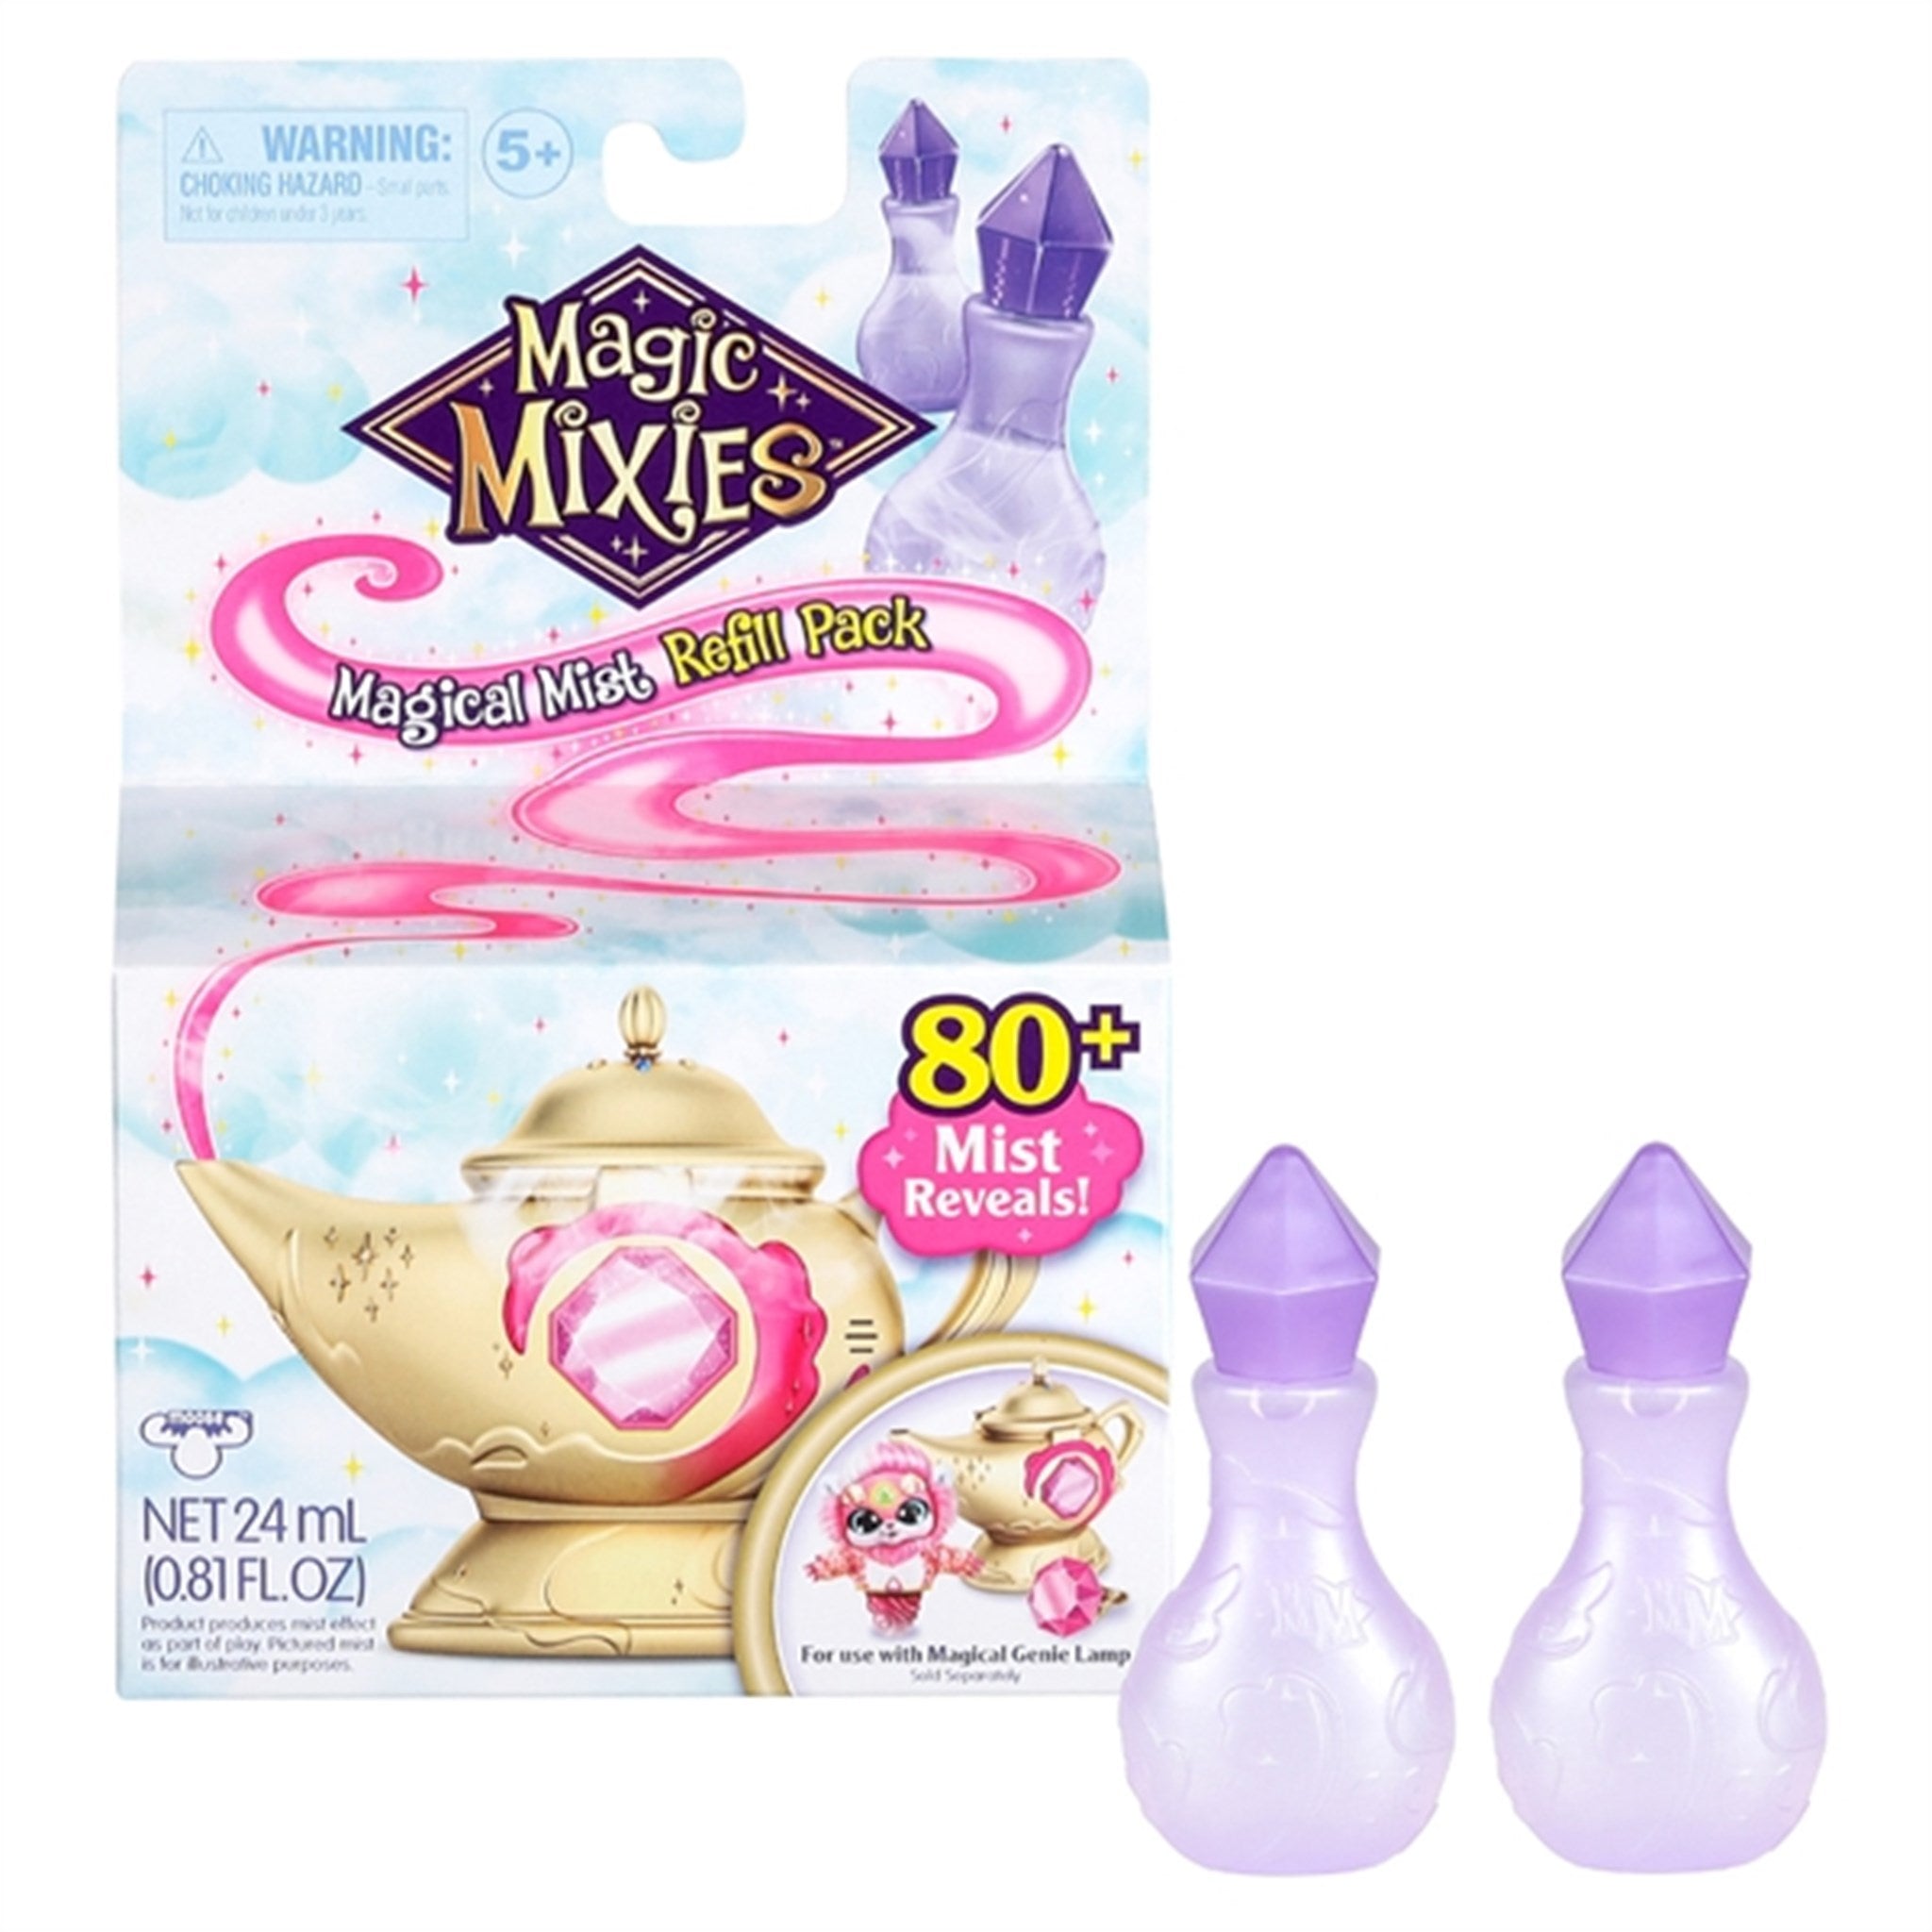 Magic Mixies Genie Lamp Refill